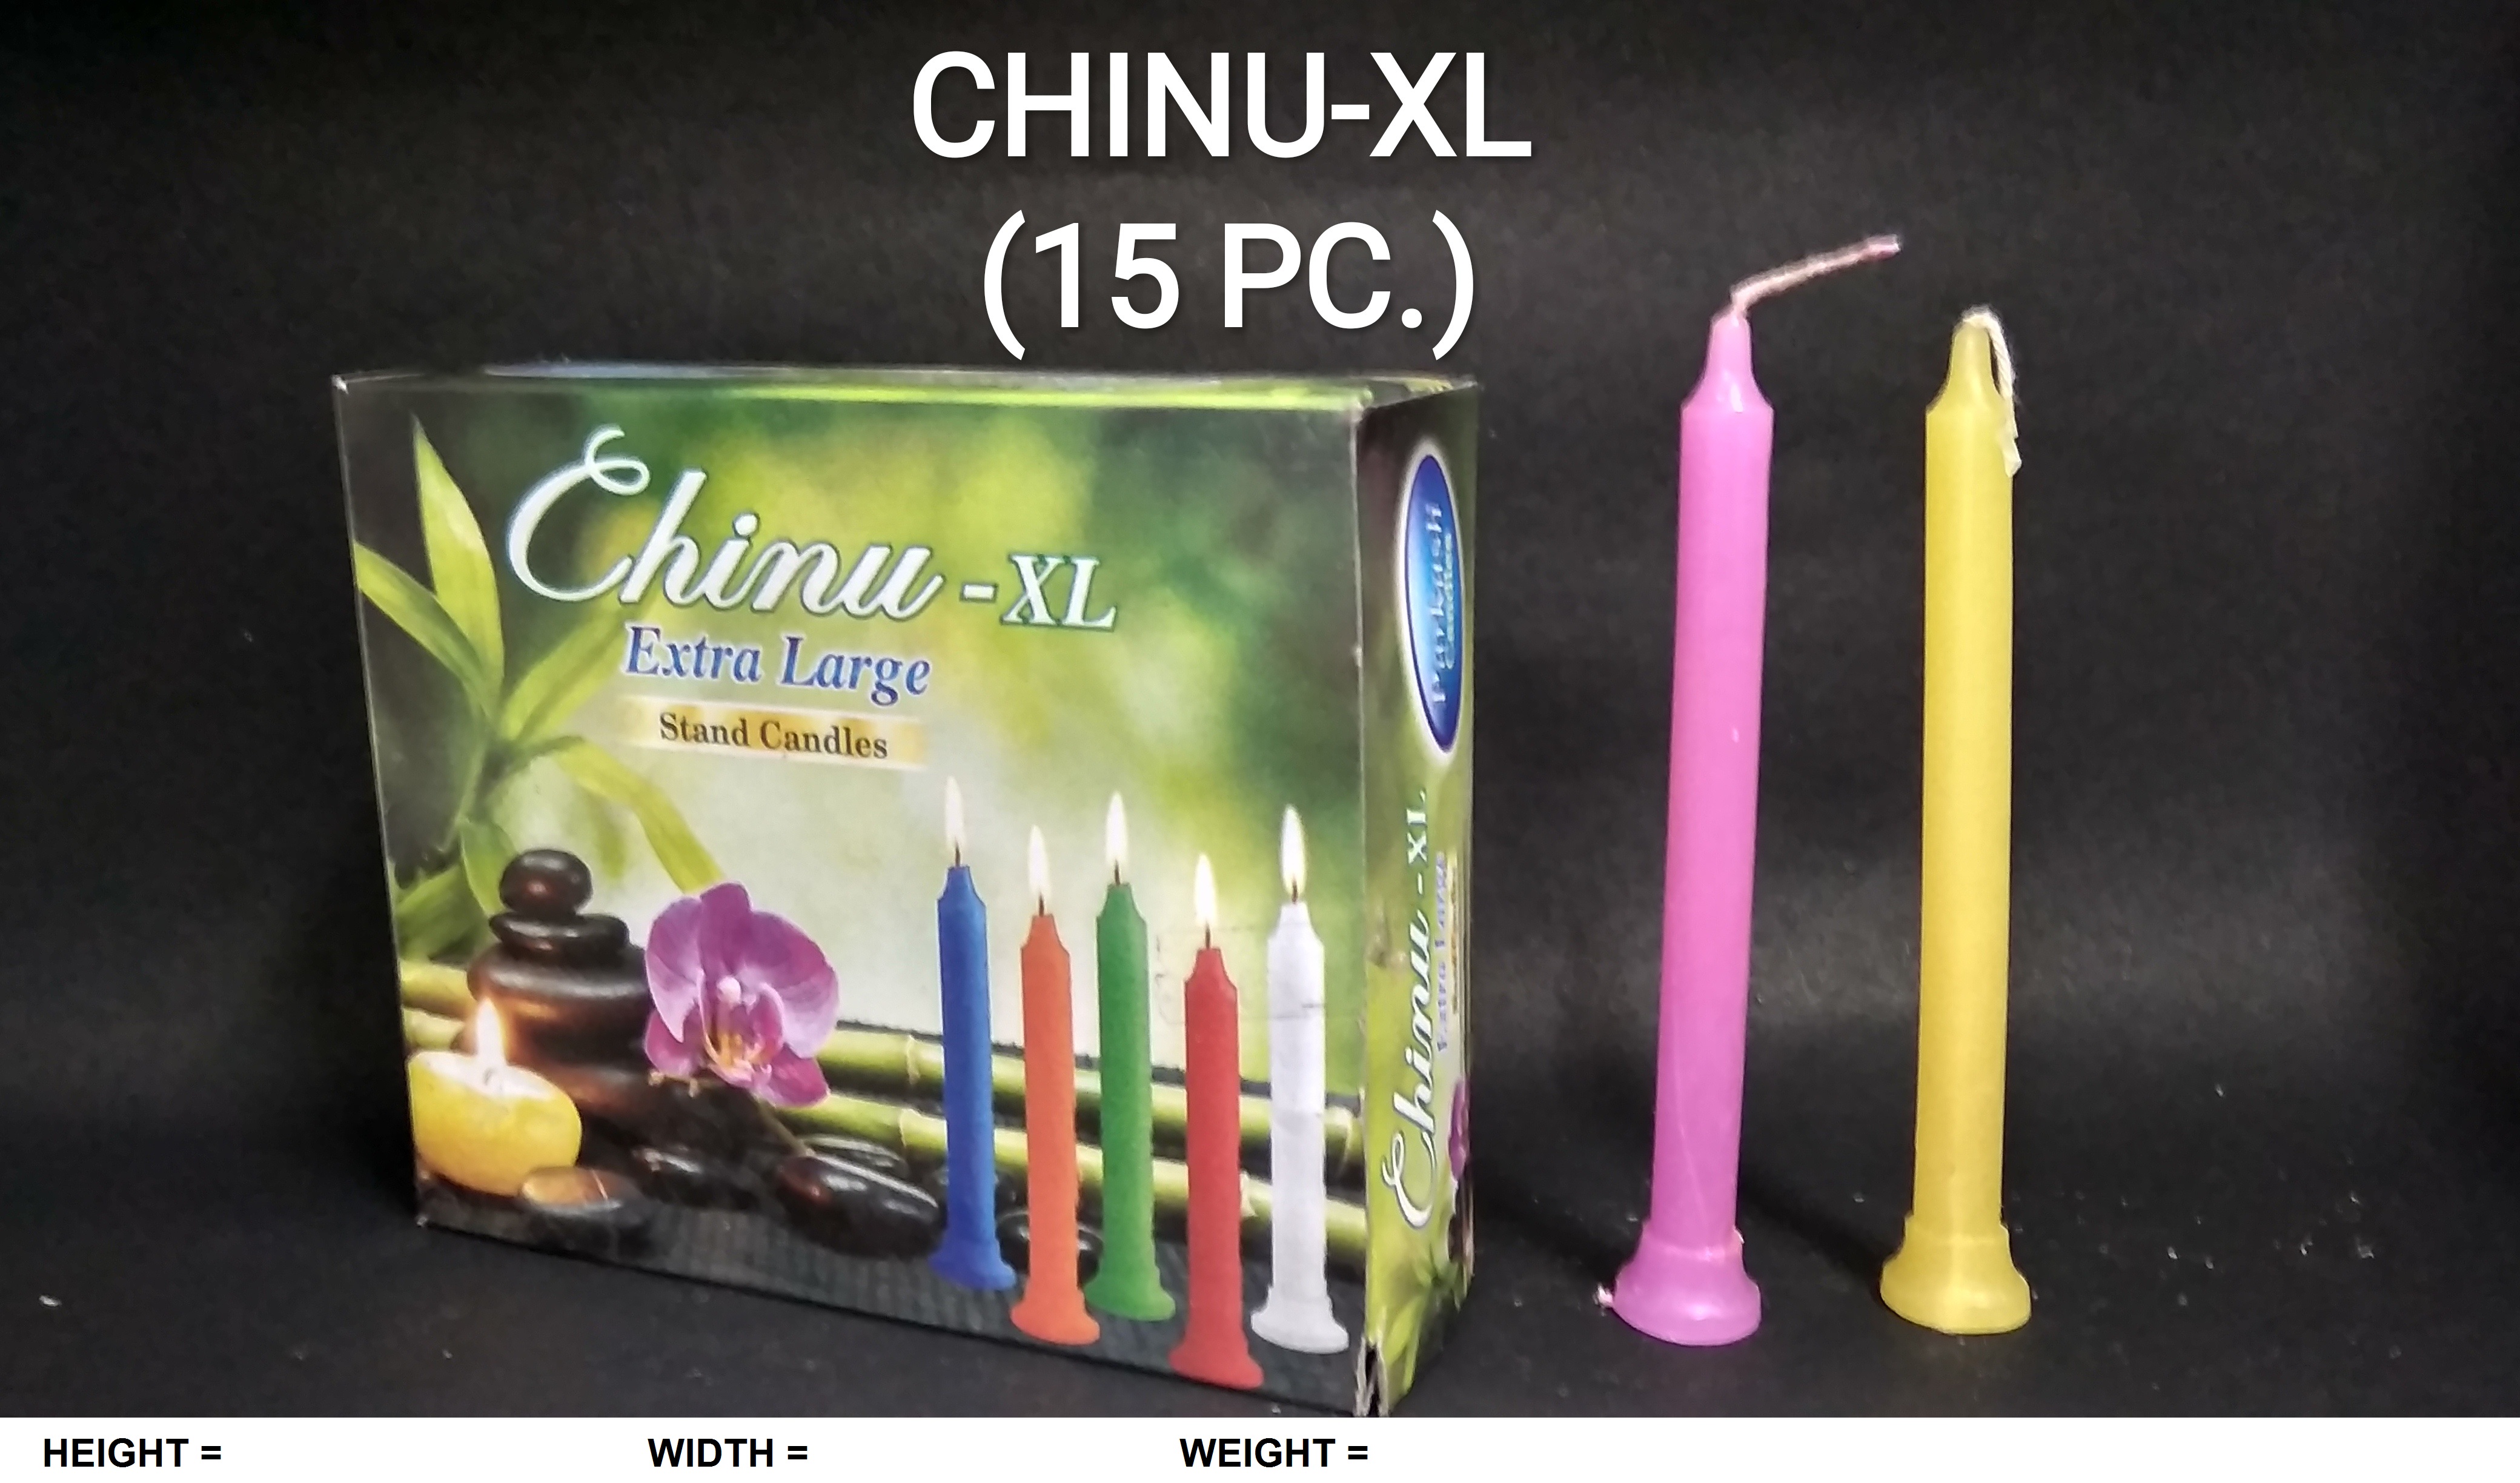 CHINU-XL